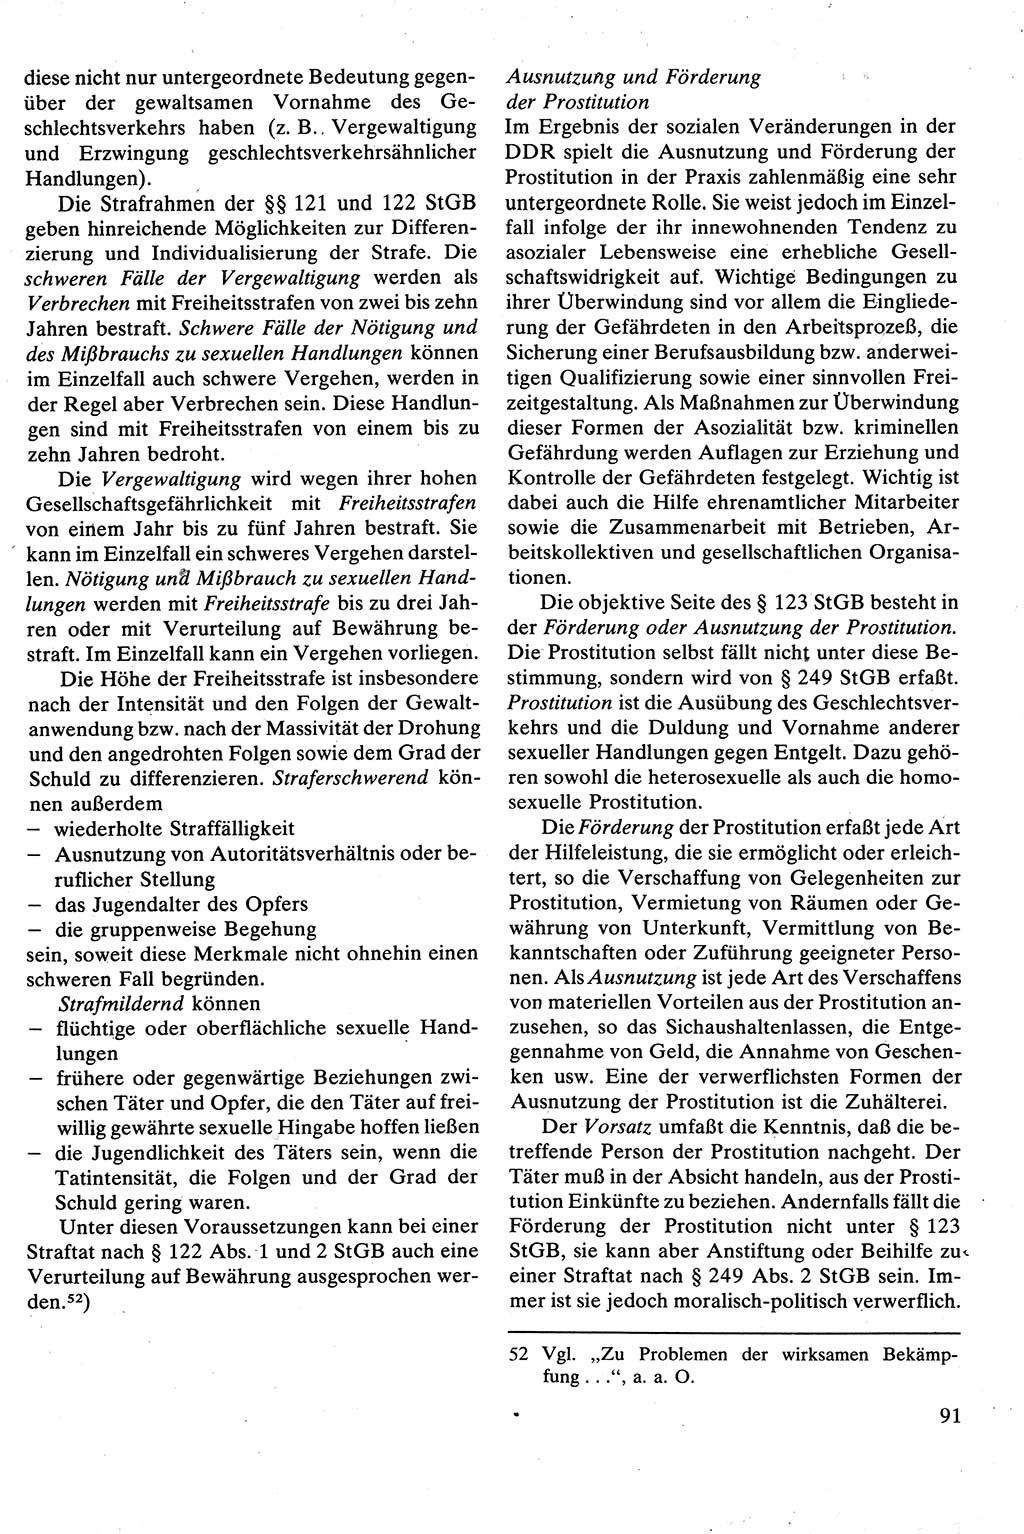 Strafrecht [Deutsche Demokratische Republik (DDR)], Besonderer Teil, Lehrbuch 1981, Seite 91 (Strafr. DDR BT Lb. 1981, S. 91)